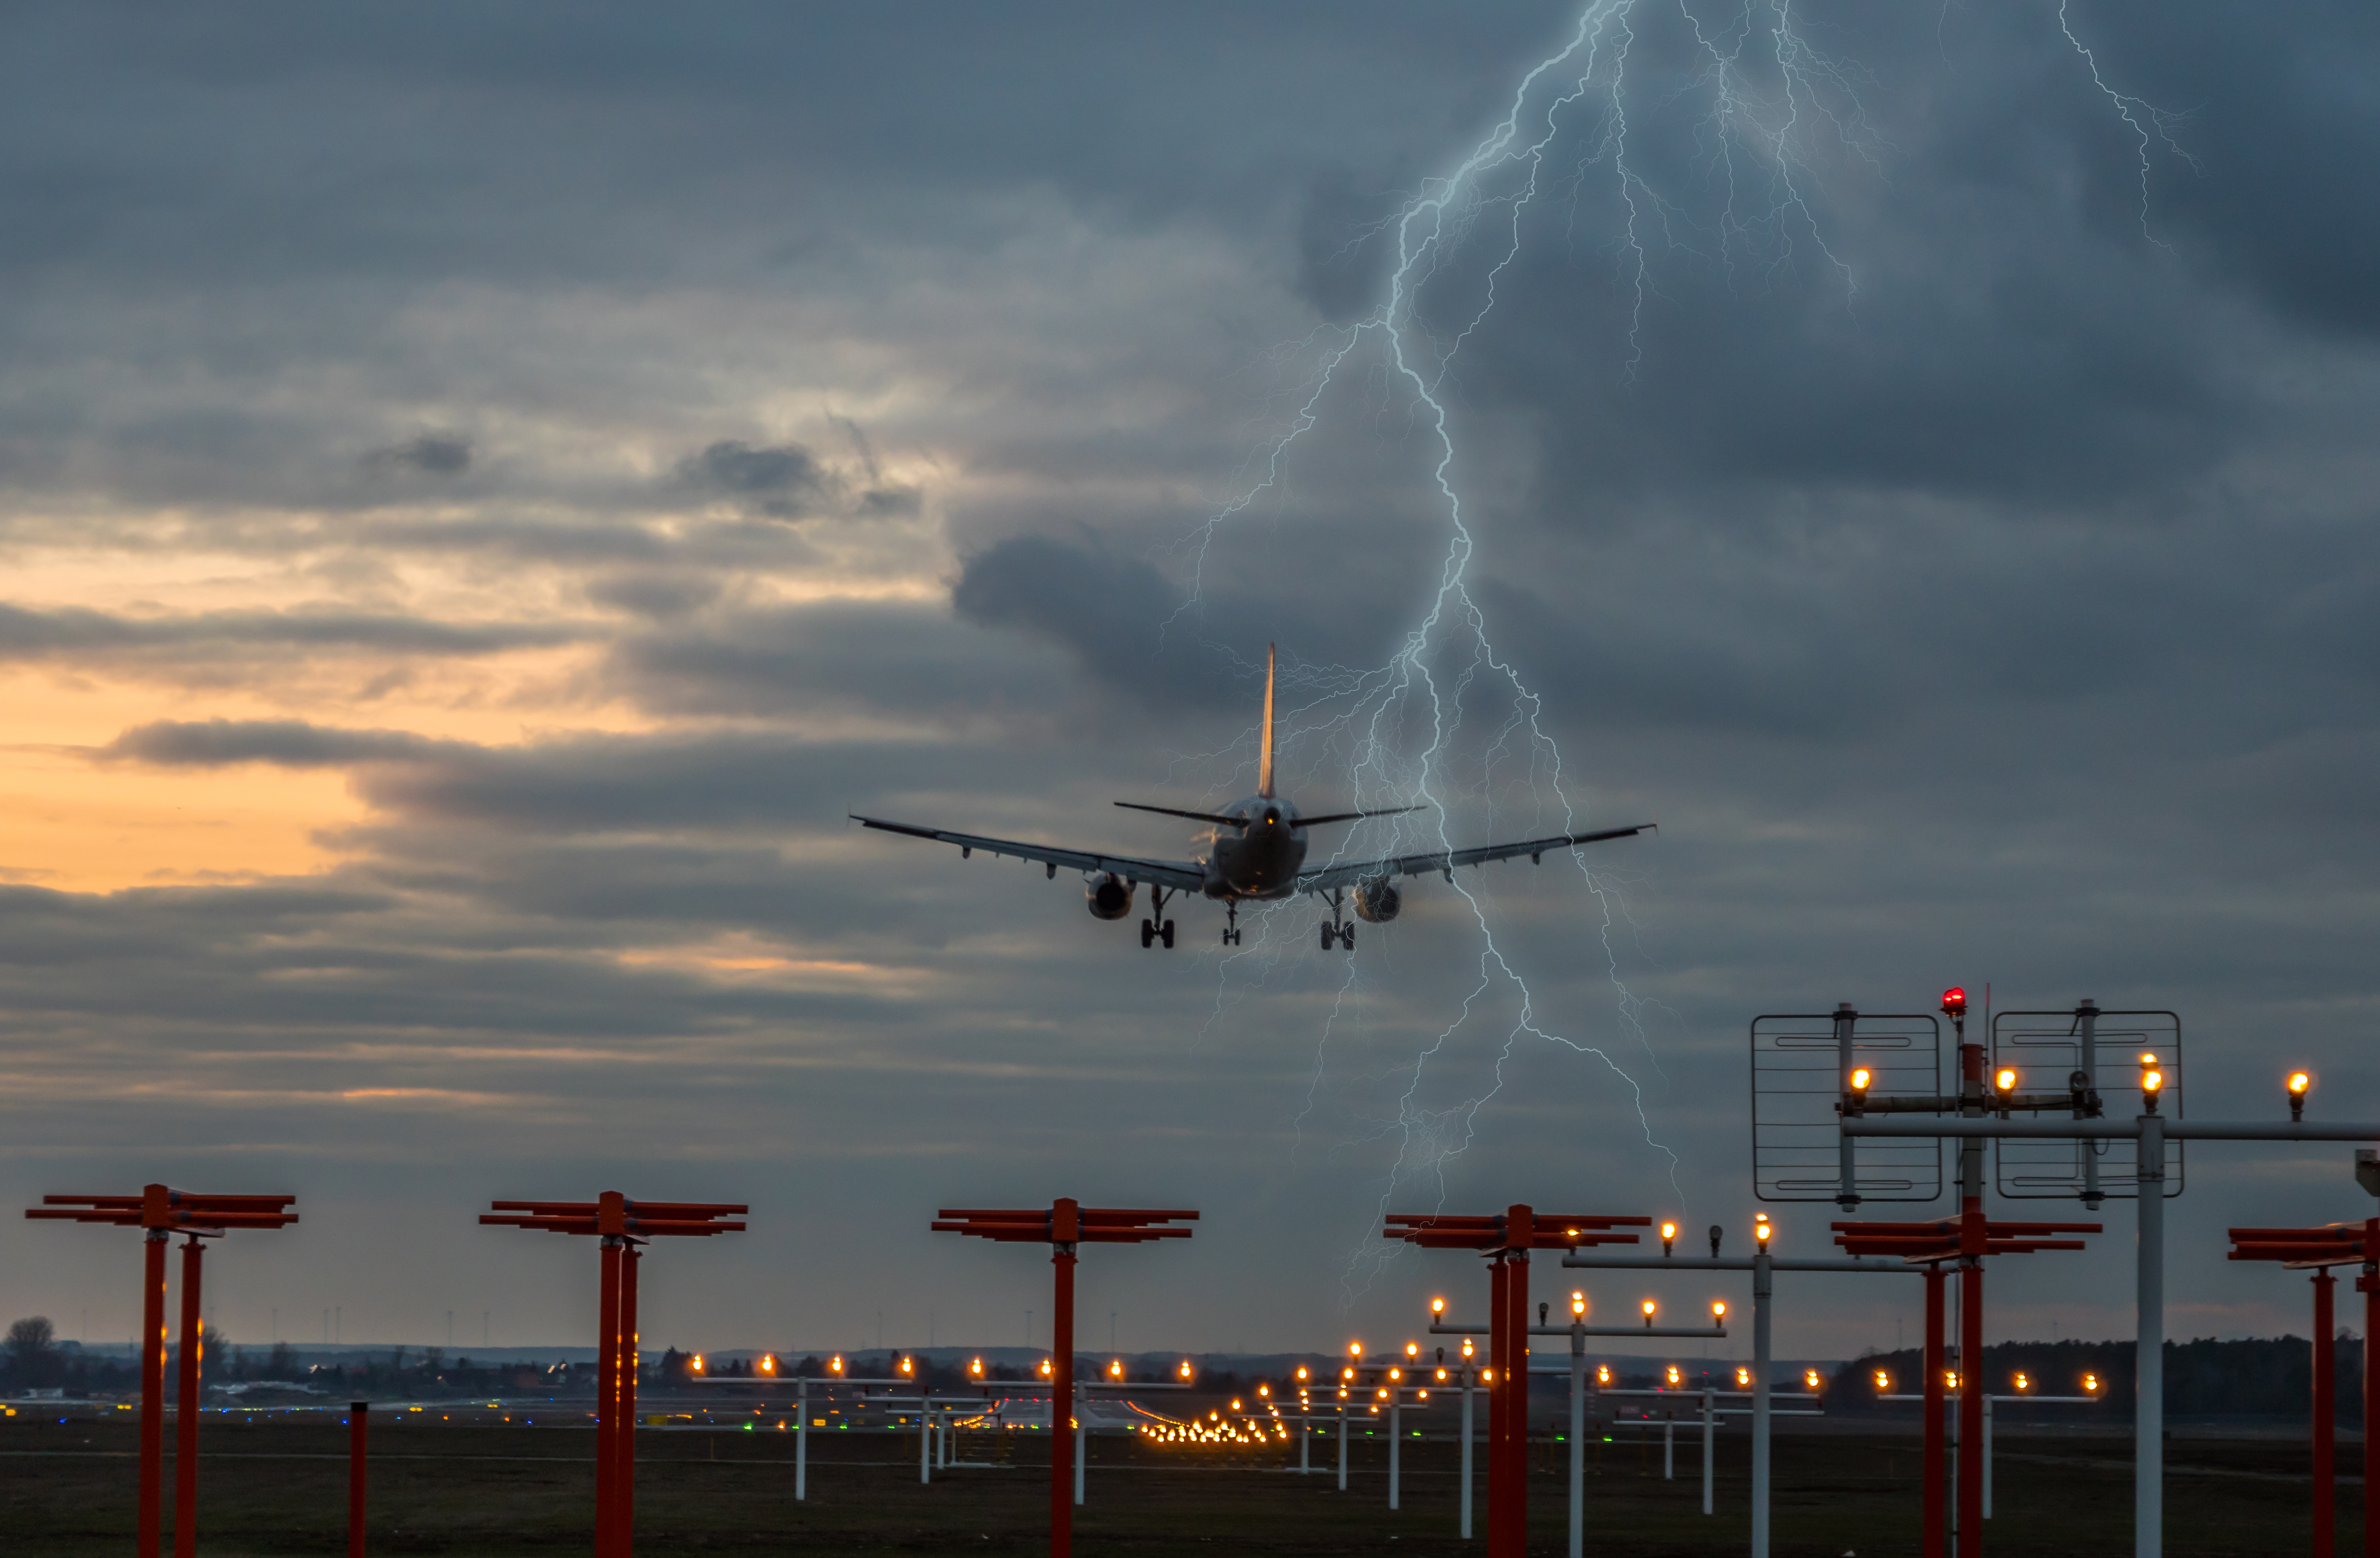 Opstijgen van vliegtuigen tijdens zwaar weer